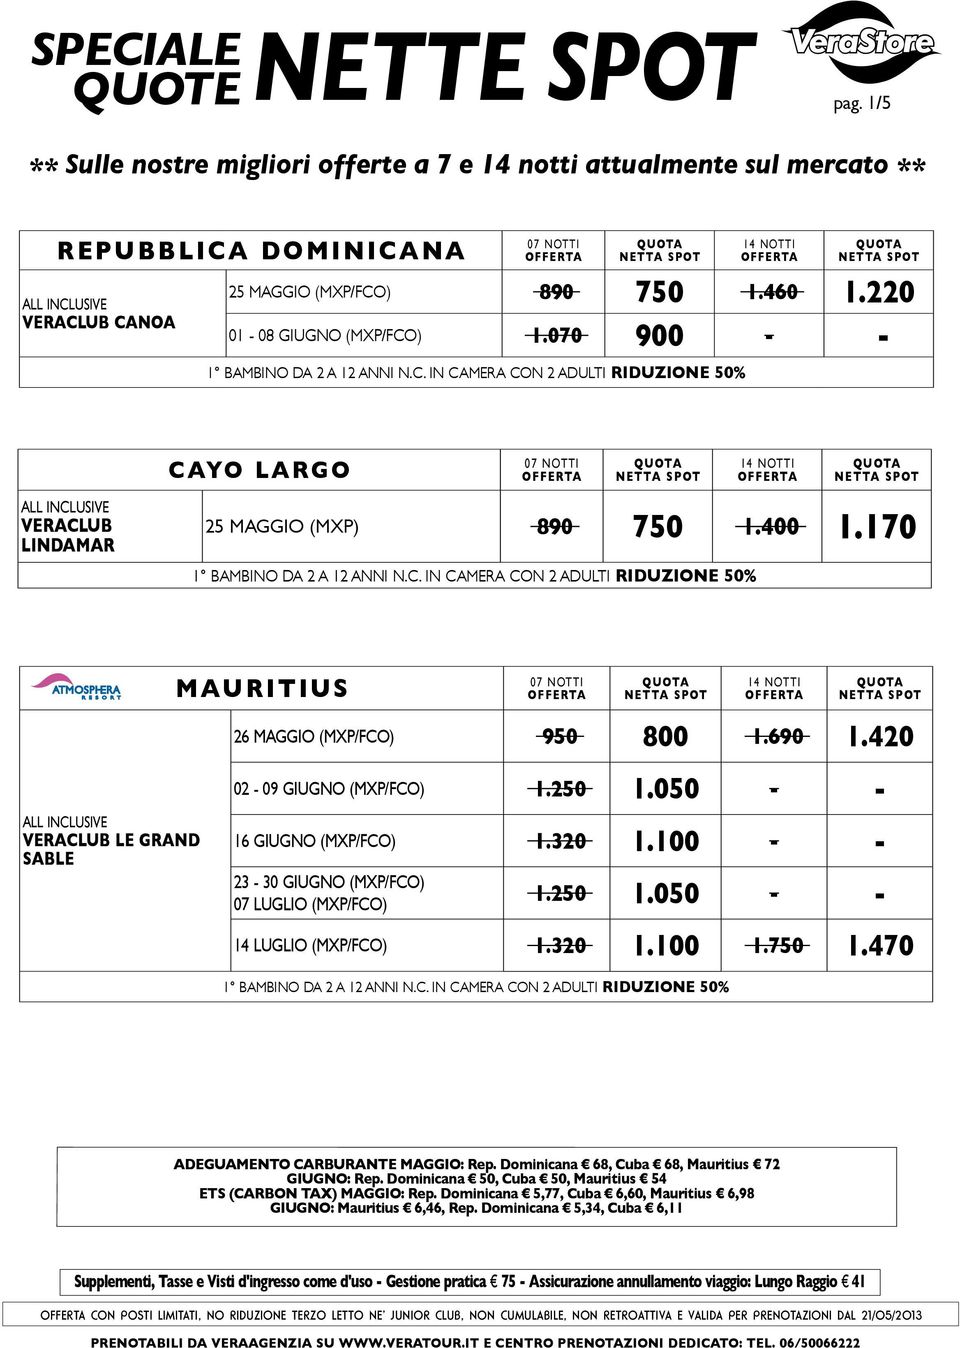 250 1.050 - - 14 LUGLIO (MXP/FCO) 1.320 1.100 1.750 1.470 Adeguamento carburante MAGGIO: Rep. Dominicana 68, Cuba 68, Mauritius 72 GIUGNO: Rep.